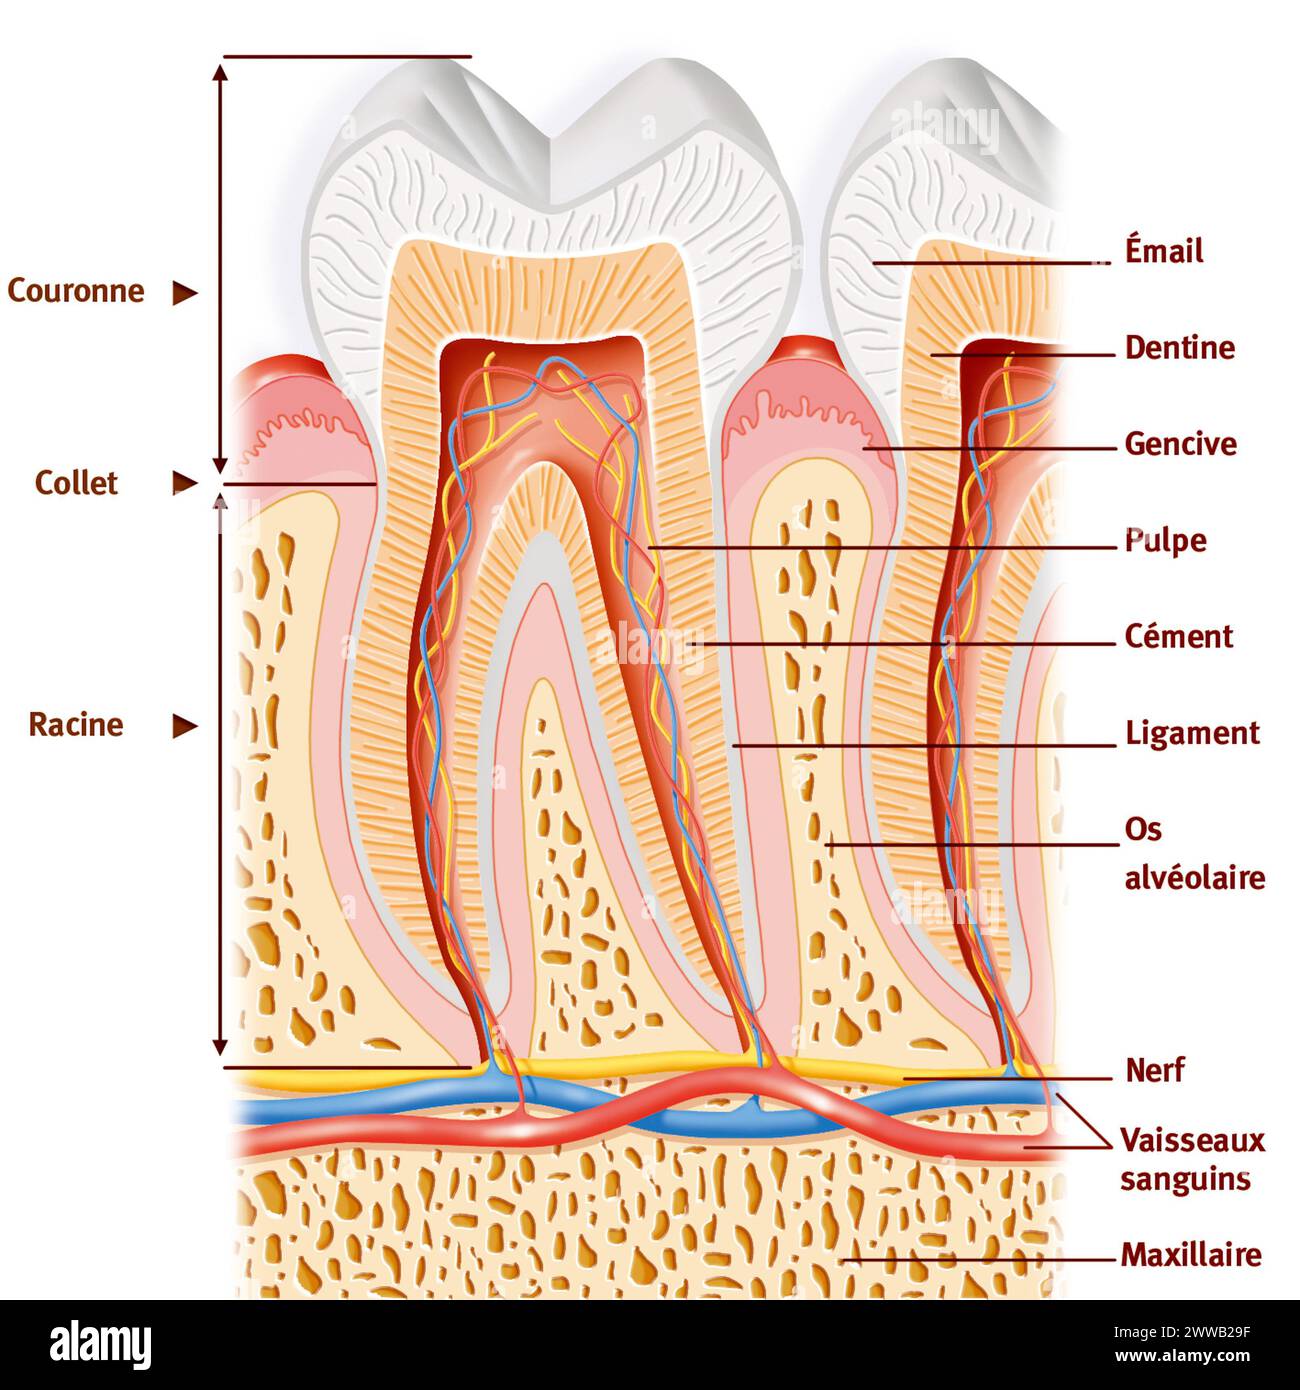 Anatomia del dente: Dall'alto verso il basso - smalto bianco - dentina in arancione - polpa di arancio scuro contenente vasi e nervi - due radici. Foto Stock